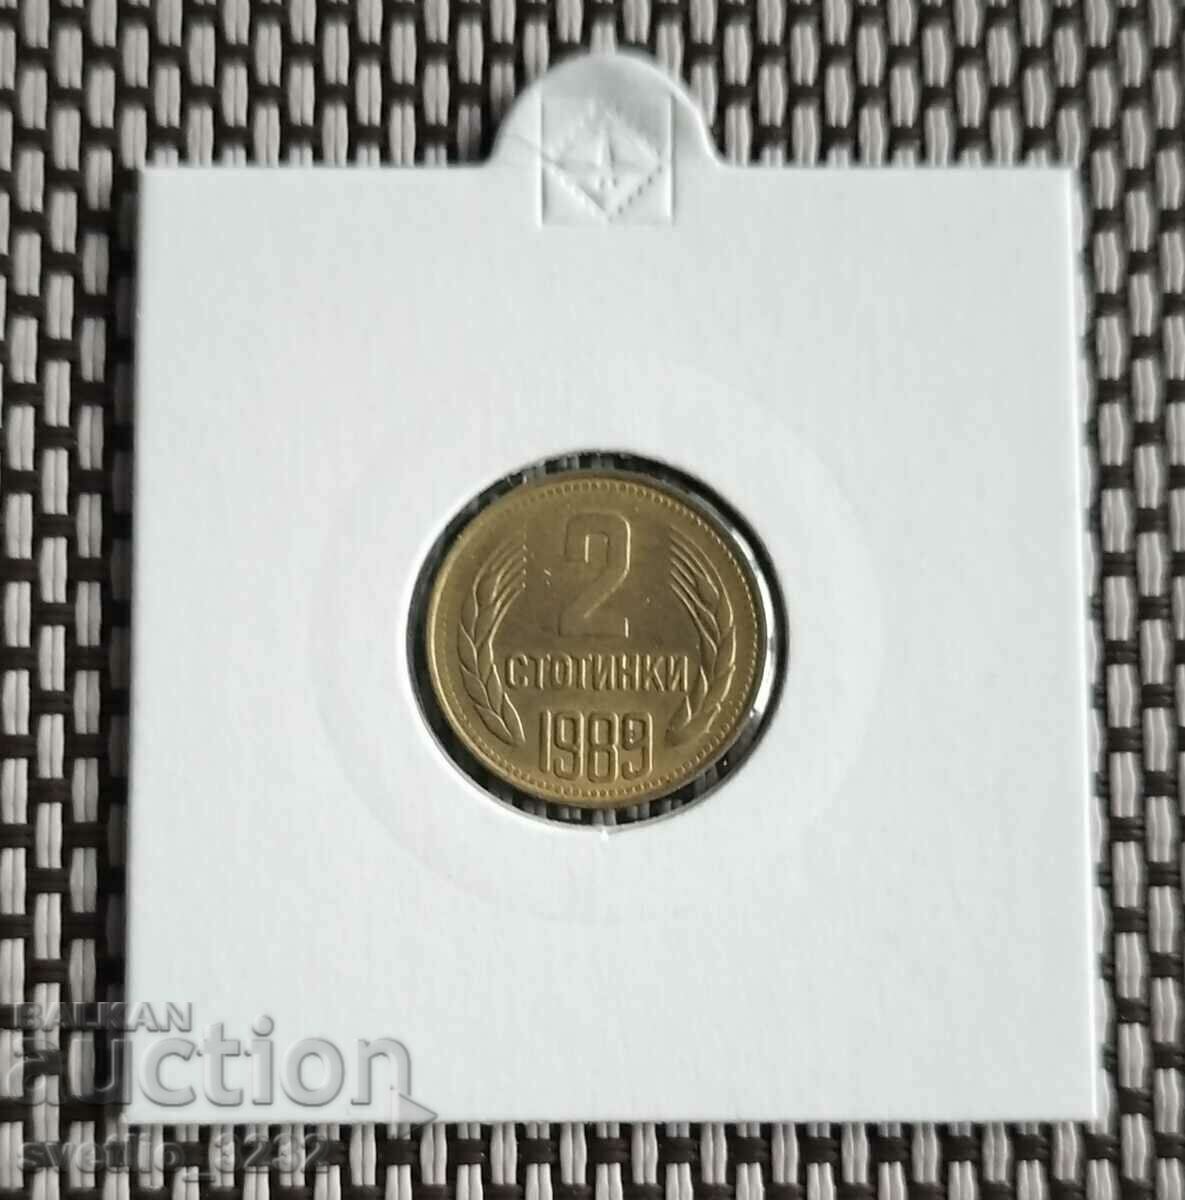 2 стотинки 1989